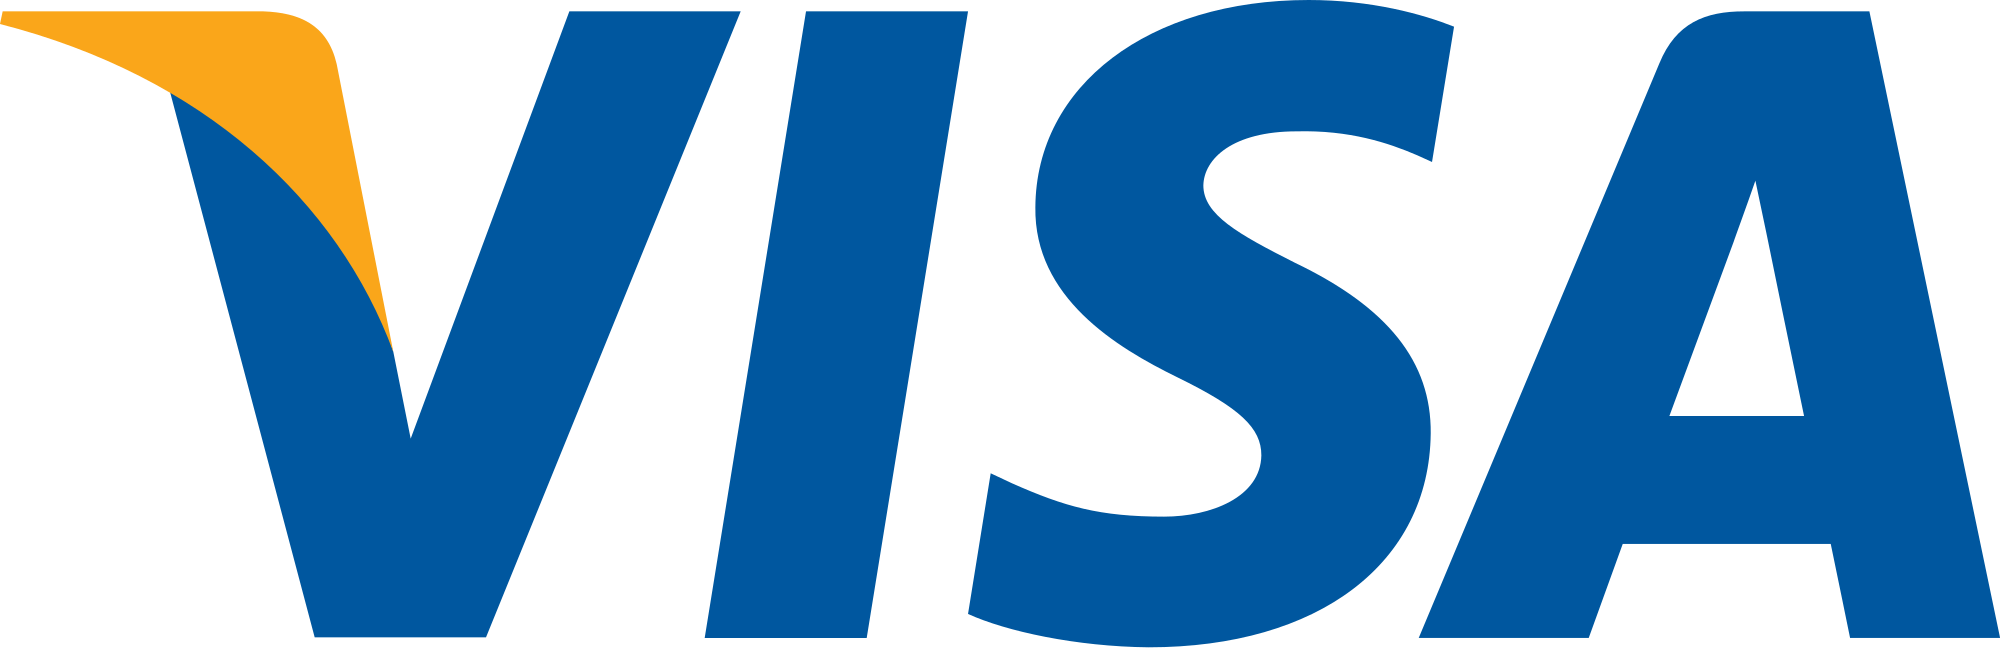 Visa Card Logo - Visa Inc. logo.svg